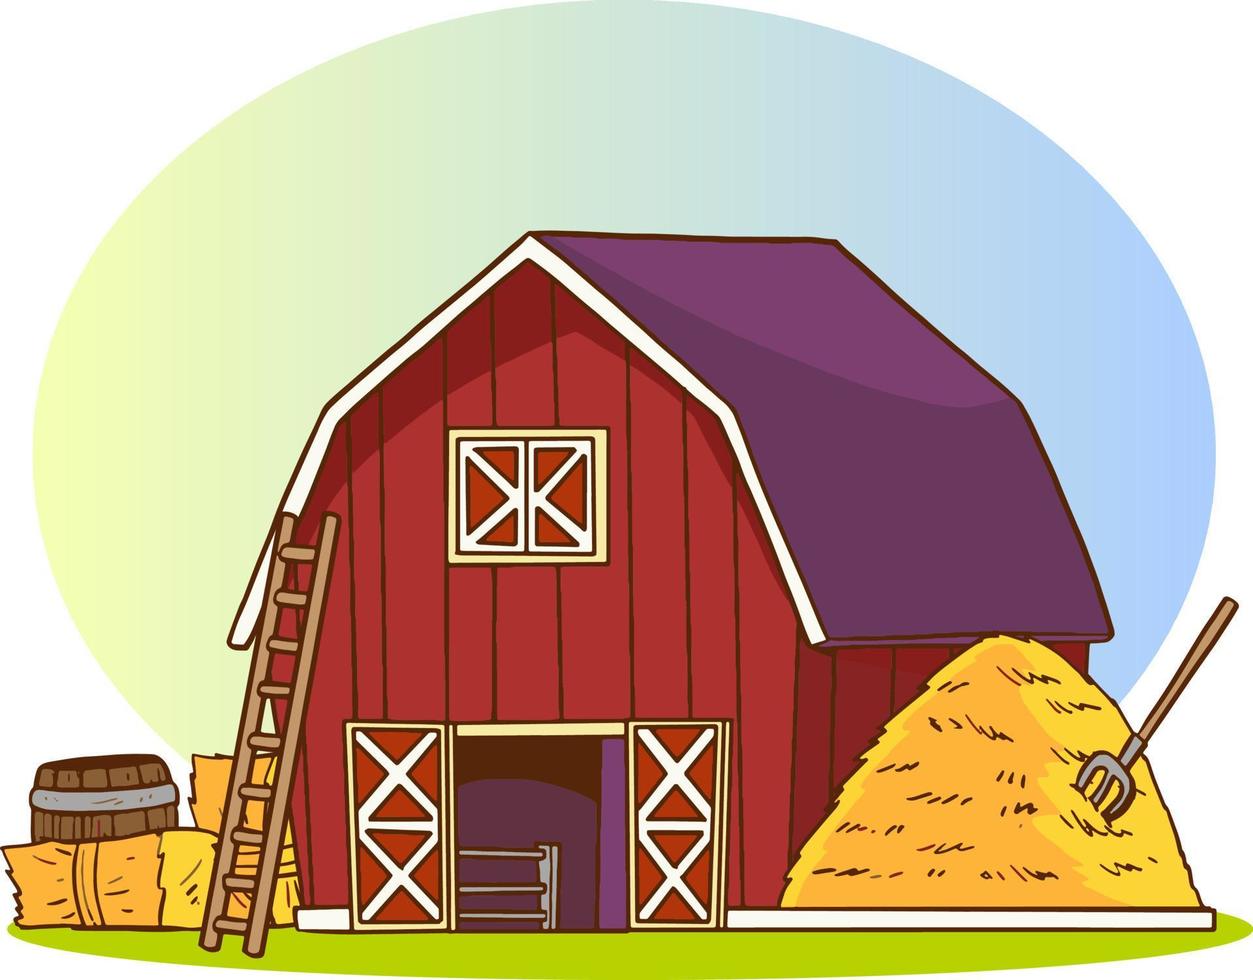 jolie maison de ferme rouge sur fond blanc en style cartoon. illustration vectorielle avec écurie et grange. vecteur